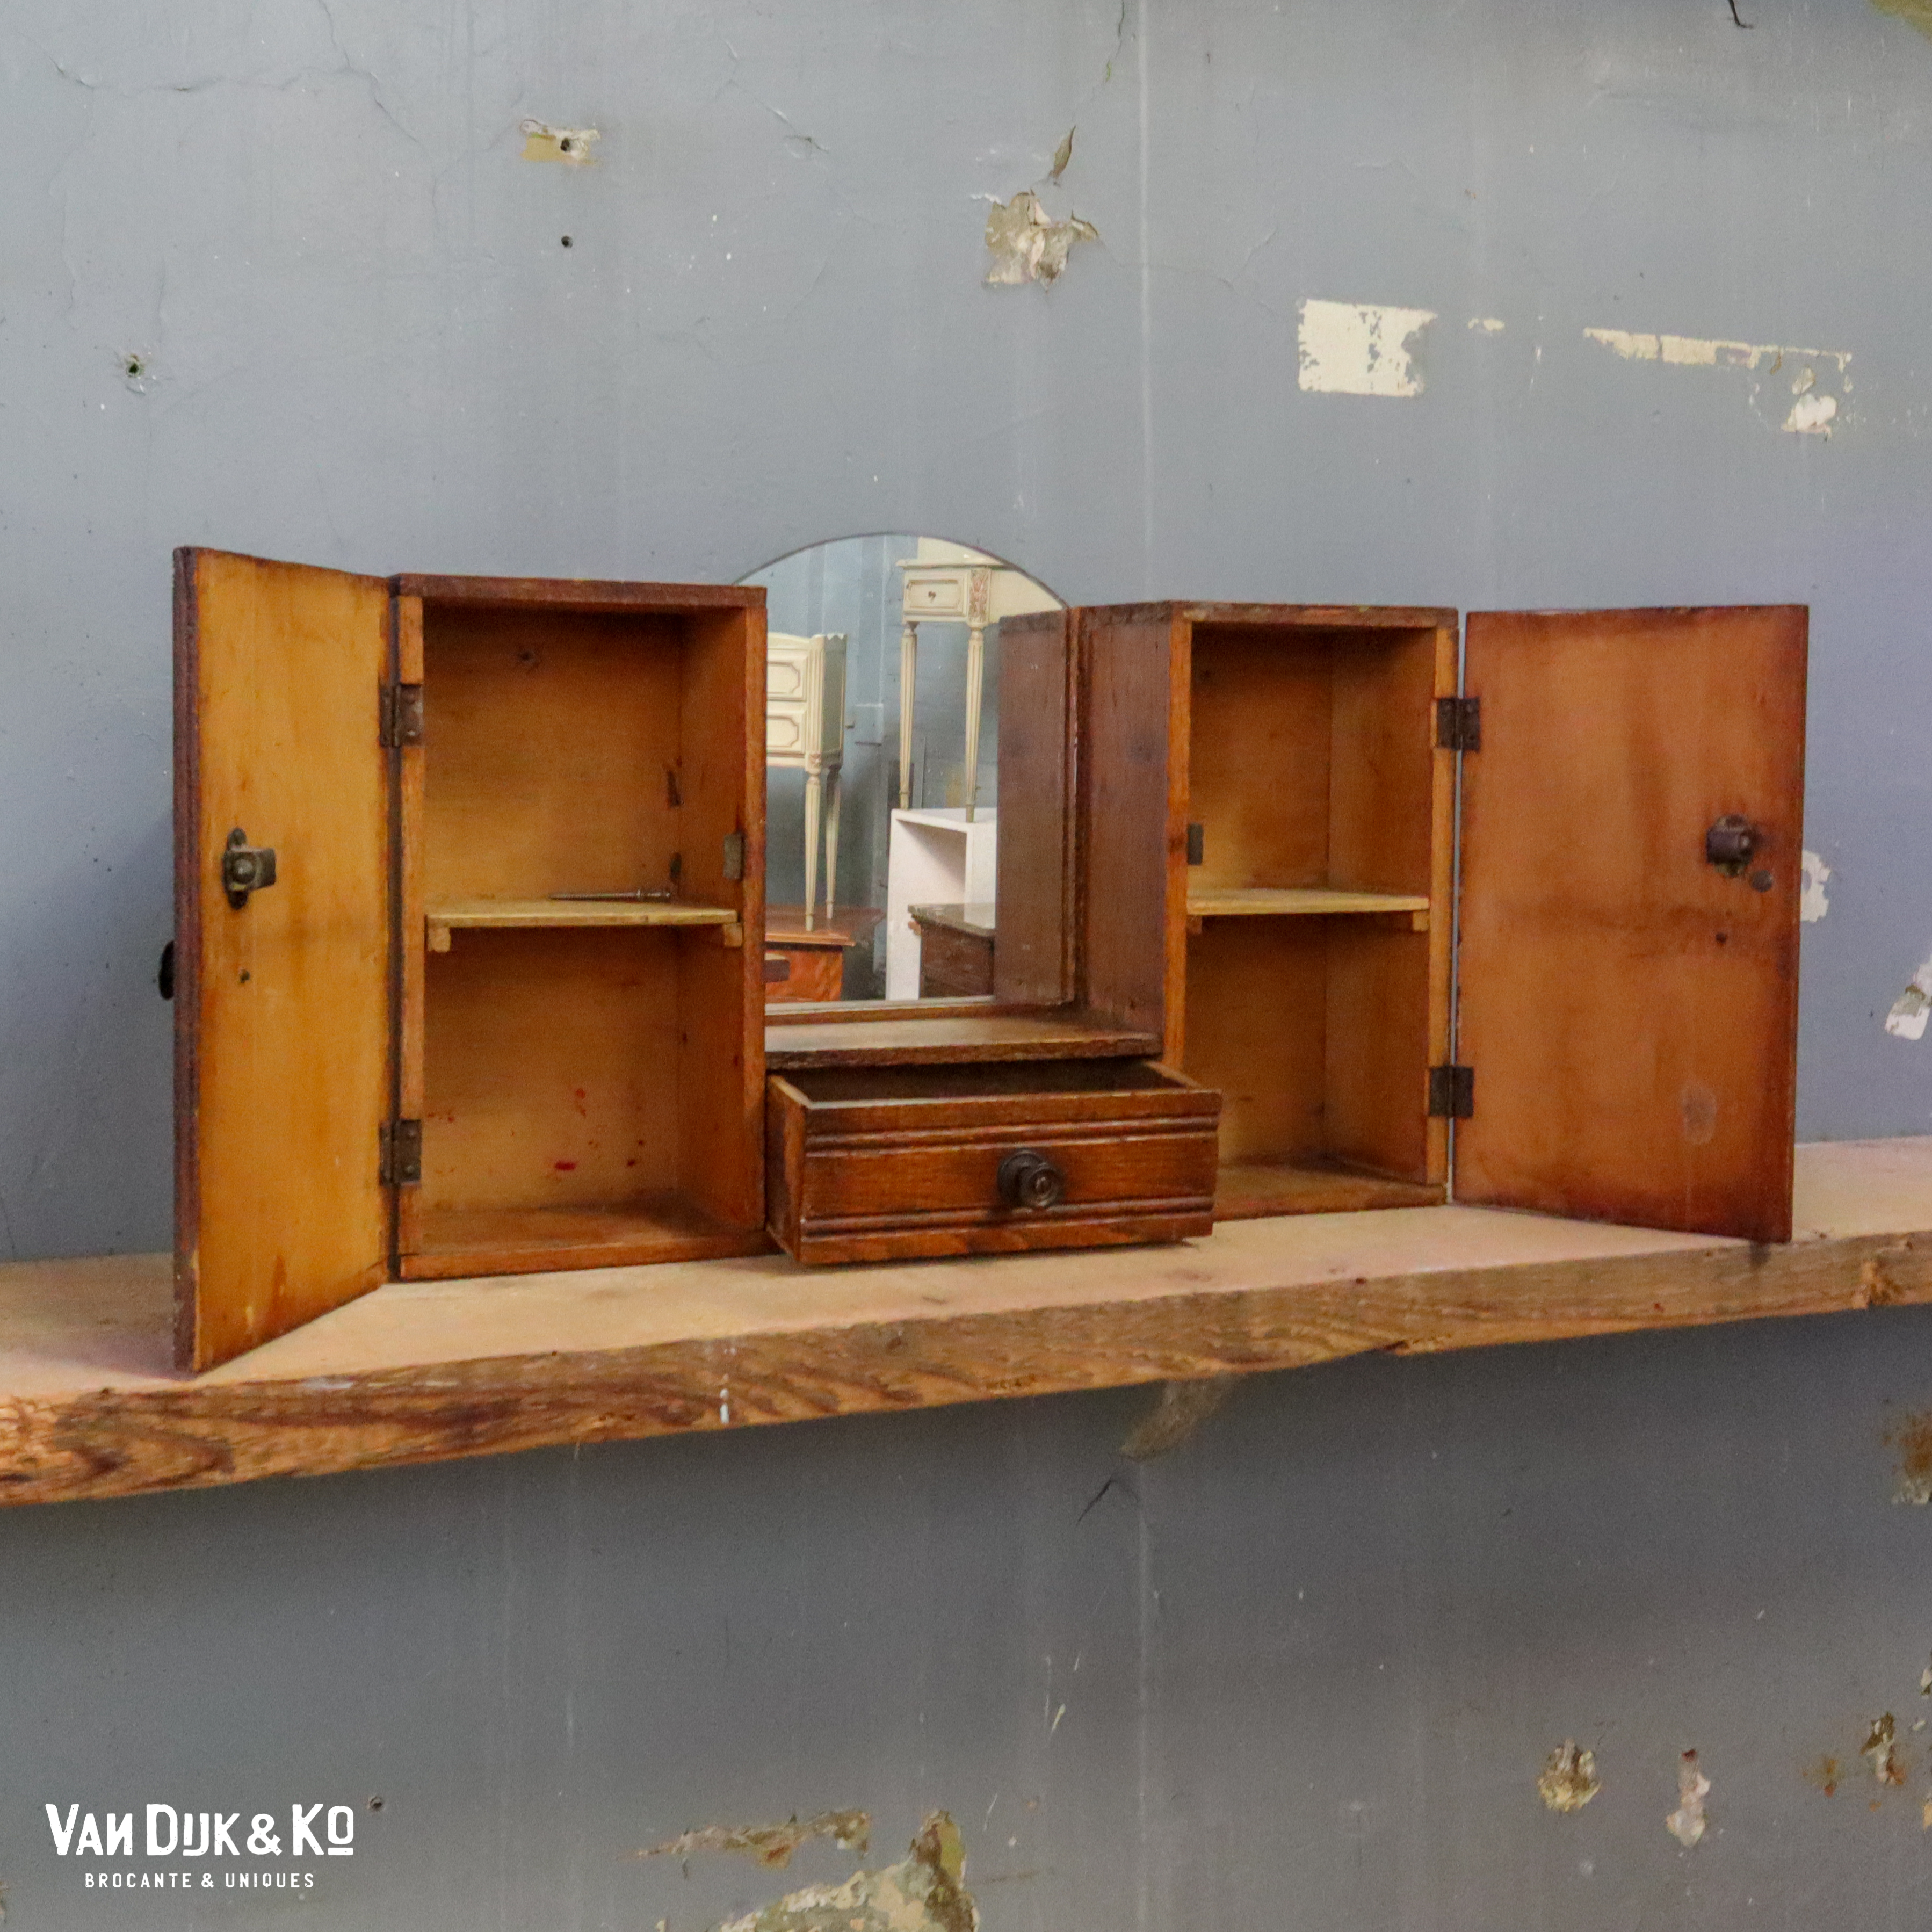 Afwijking Kraan onszelf Vintage hangkastje met spiegel » Van Dijk & Ko